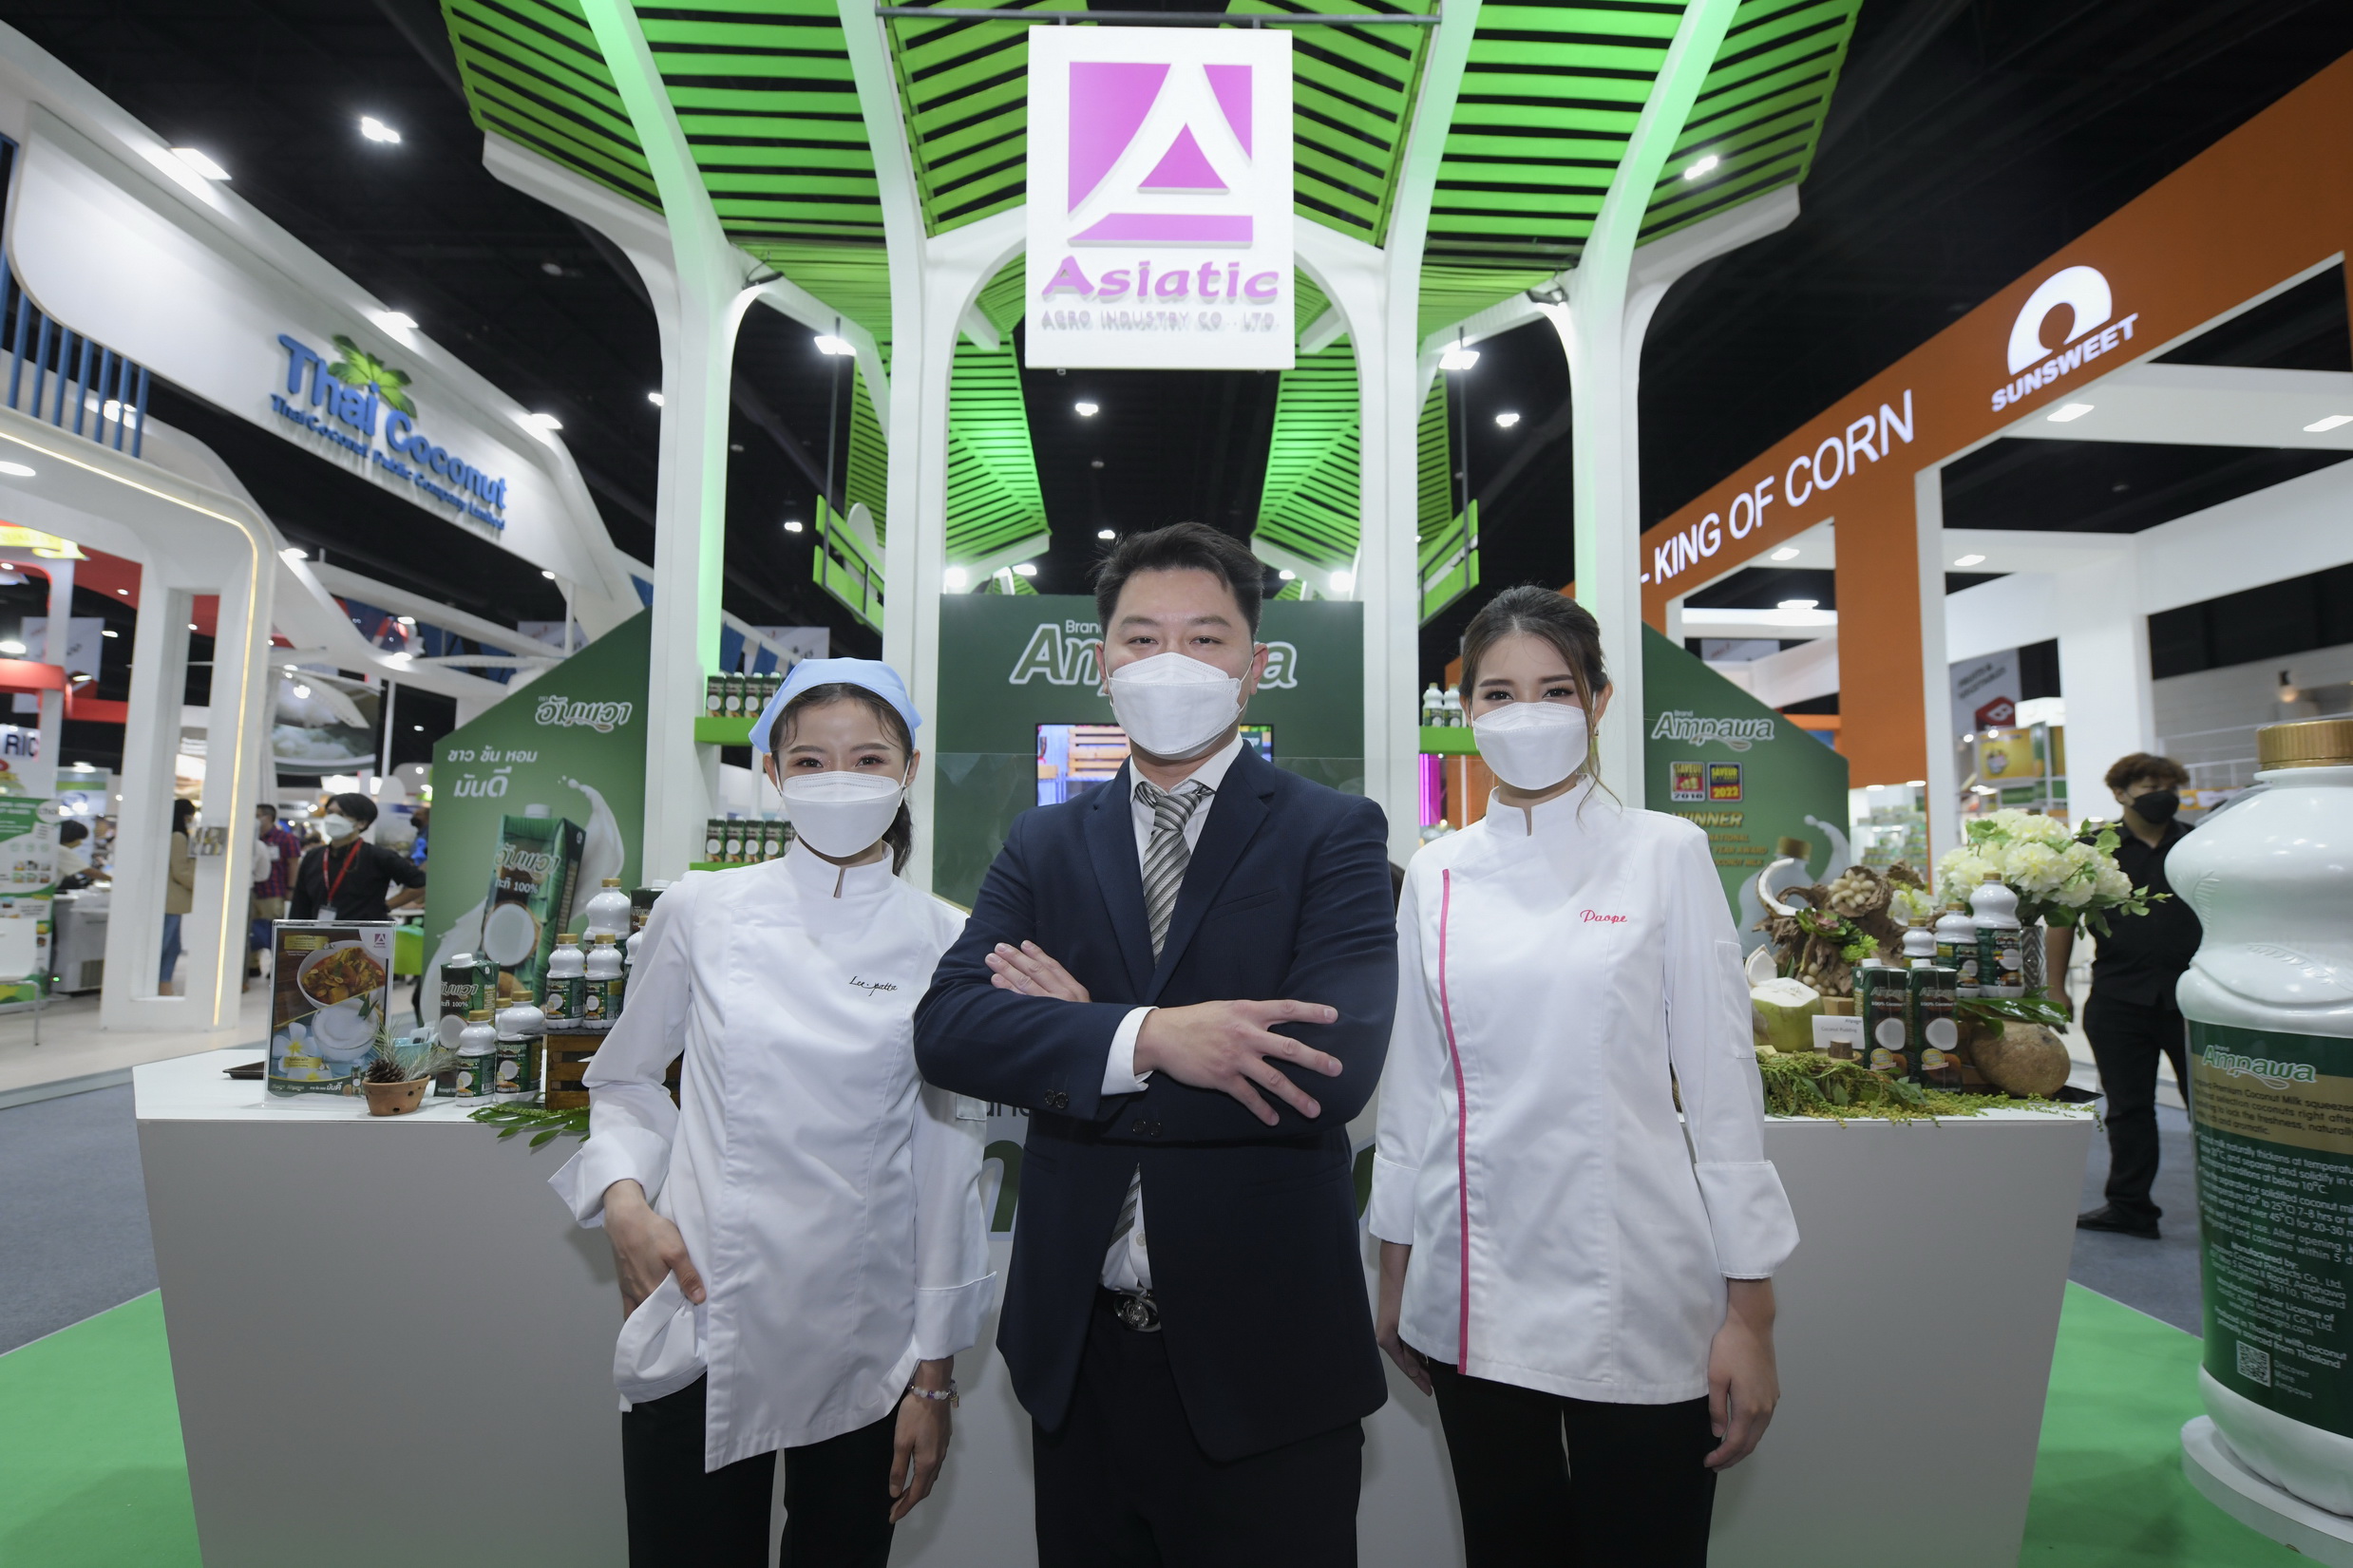 เอเซียติคฯ โชว์สุดยอดนวัตกรรมในงาน THAIFEX–Anuga Asia 2022 ตอกย้ำภาพลักษณ์ผู้นำตัวจริงธุรกิจมะพร้าวครบวงจร ปลื้ม “โคโค่แม็ก” กวาดยอดอันดับ 1 ในไทย 4 ปีซ้อน